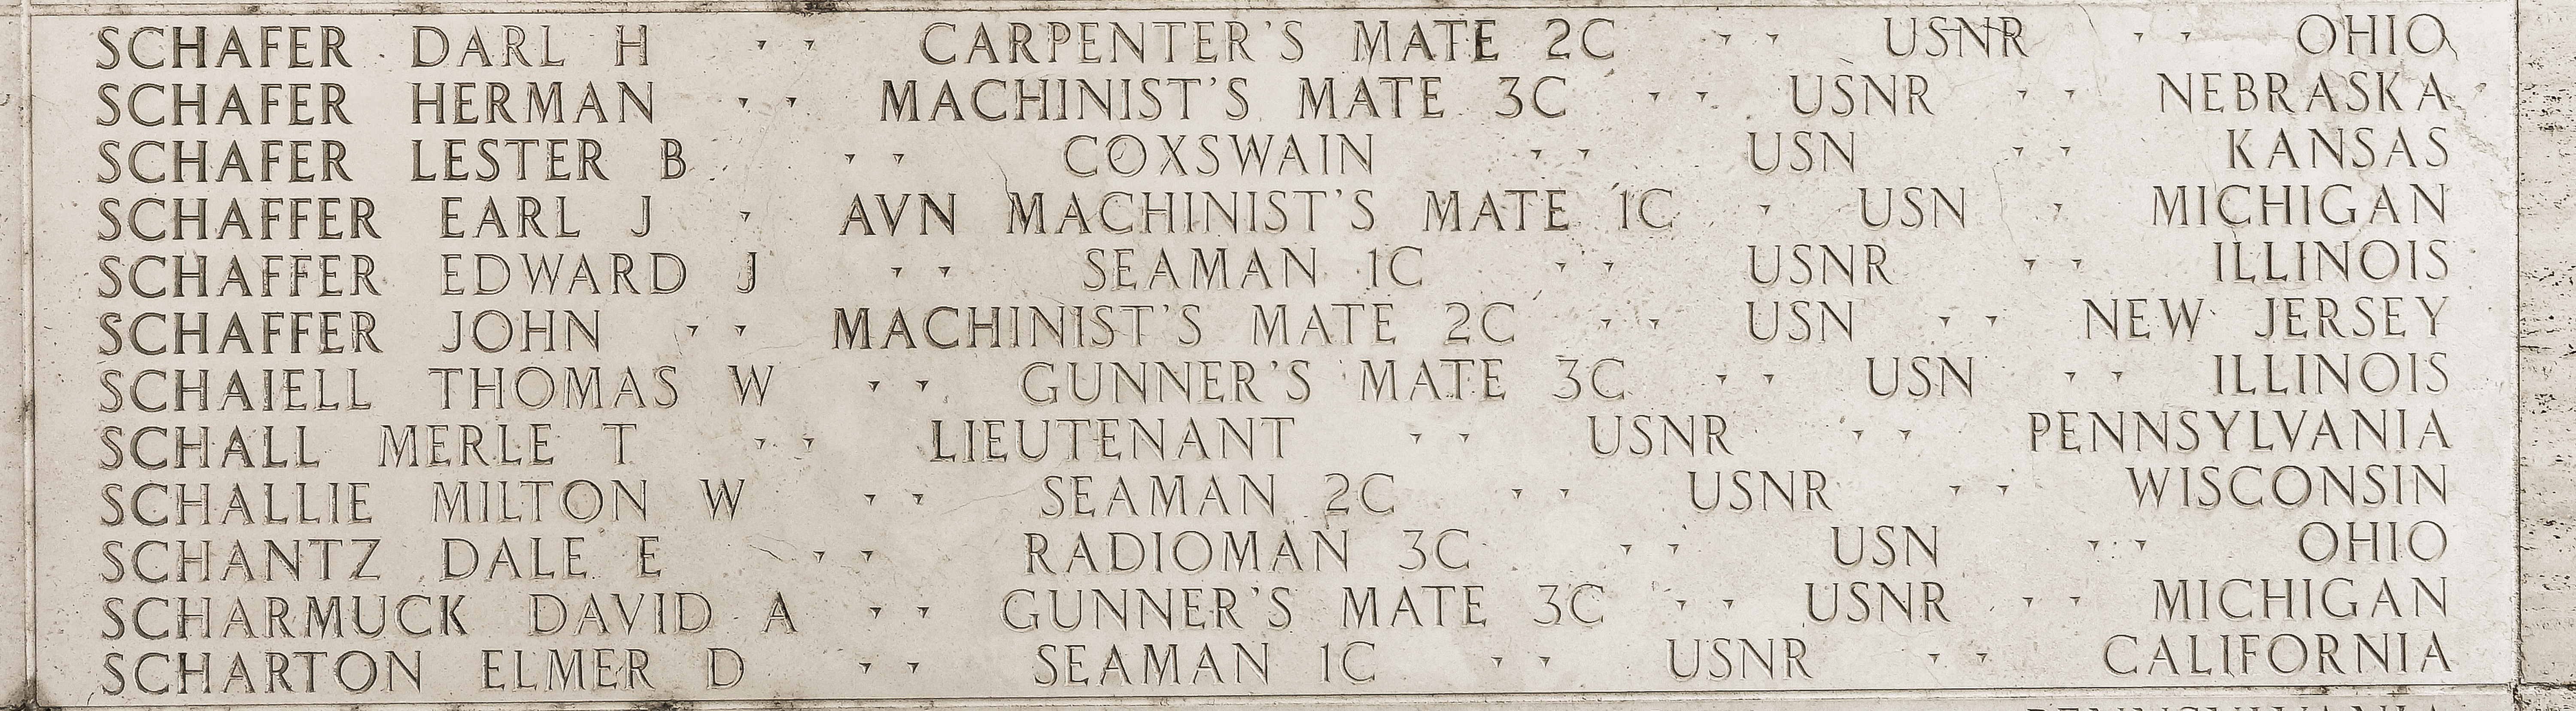 Edward J. Schaffer, Seaman First Class